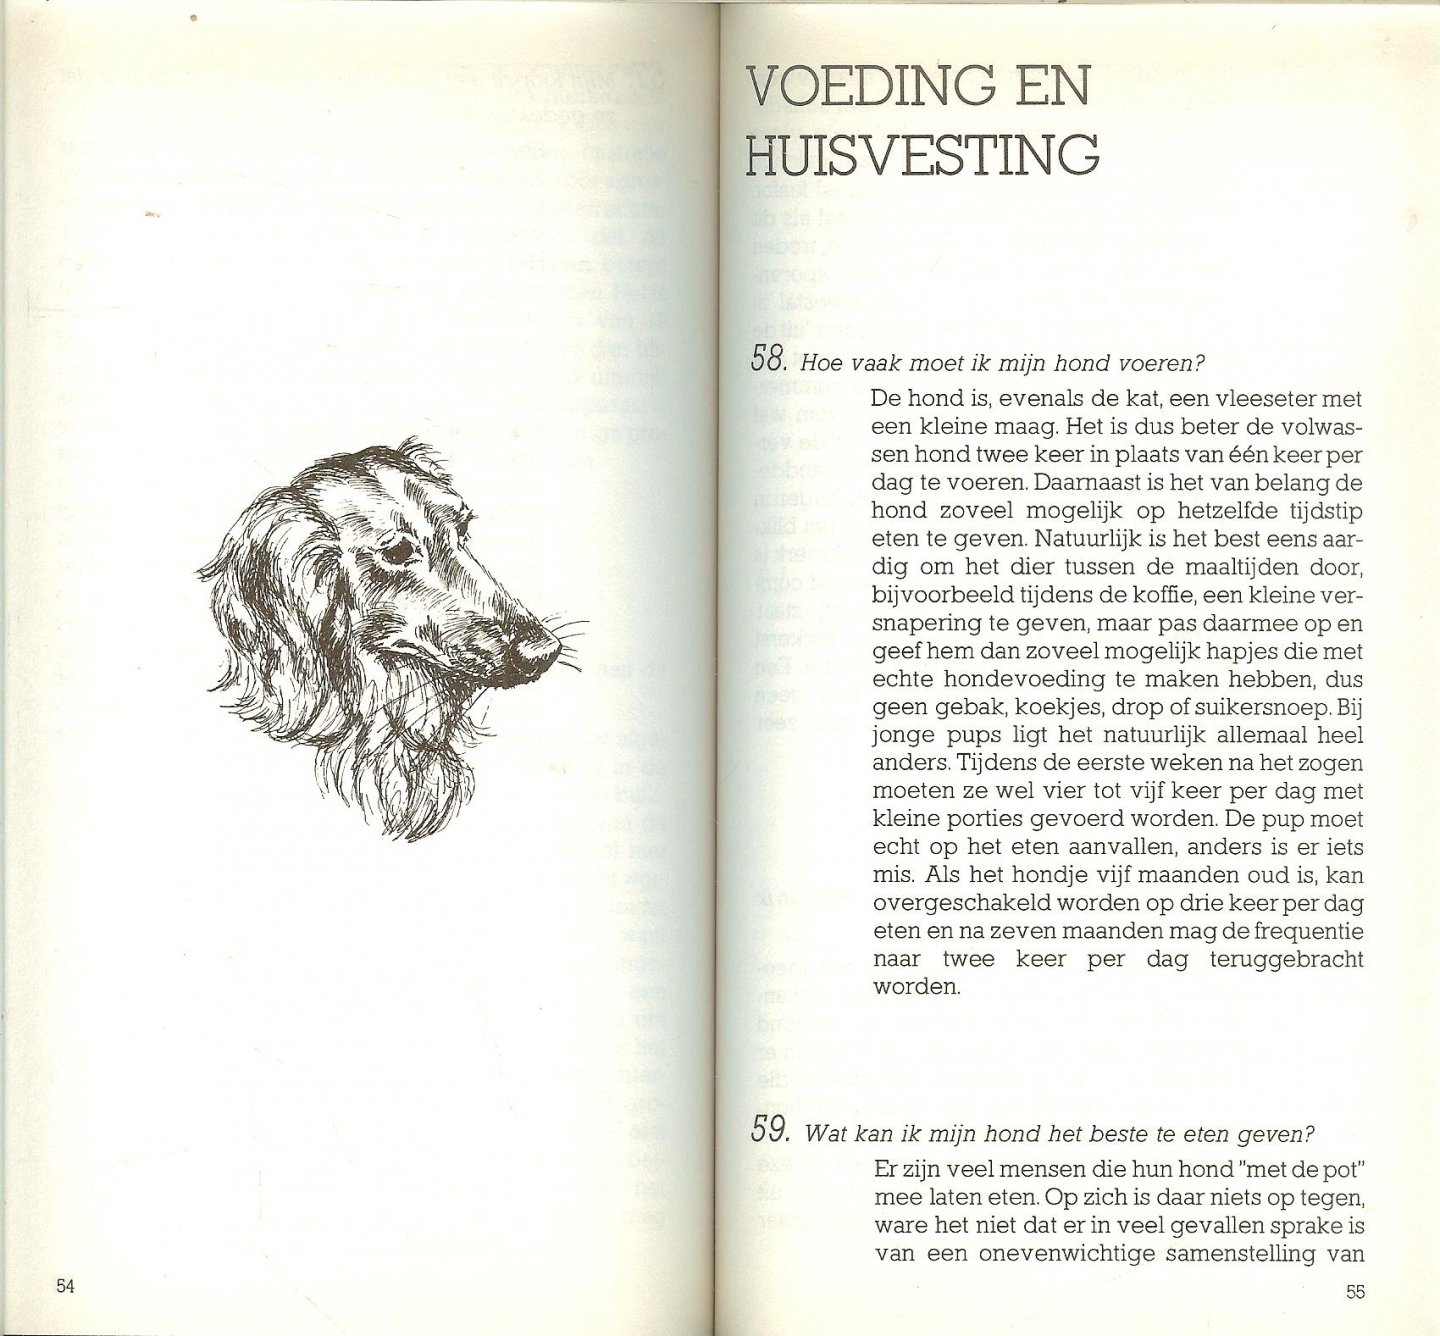 Lommers, Henk Omslag Cor 't Hart  Illustraties Monique de Boer  Boekverzorging Johan Bos - Honden. 101 vragen aan dierenarts Henk Lommers